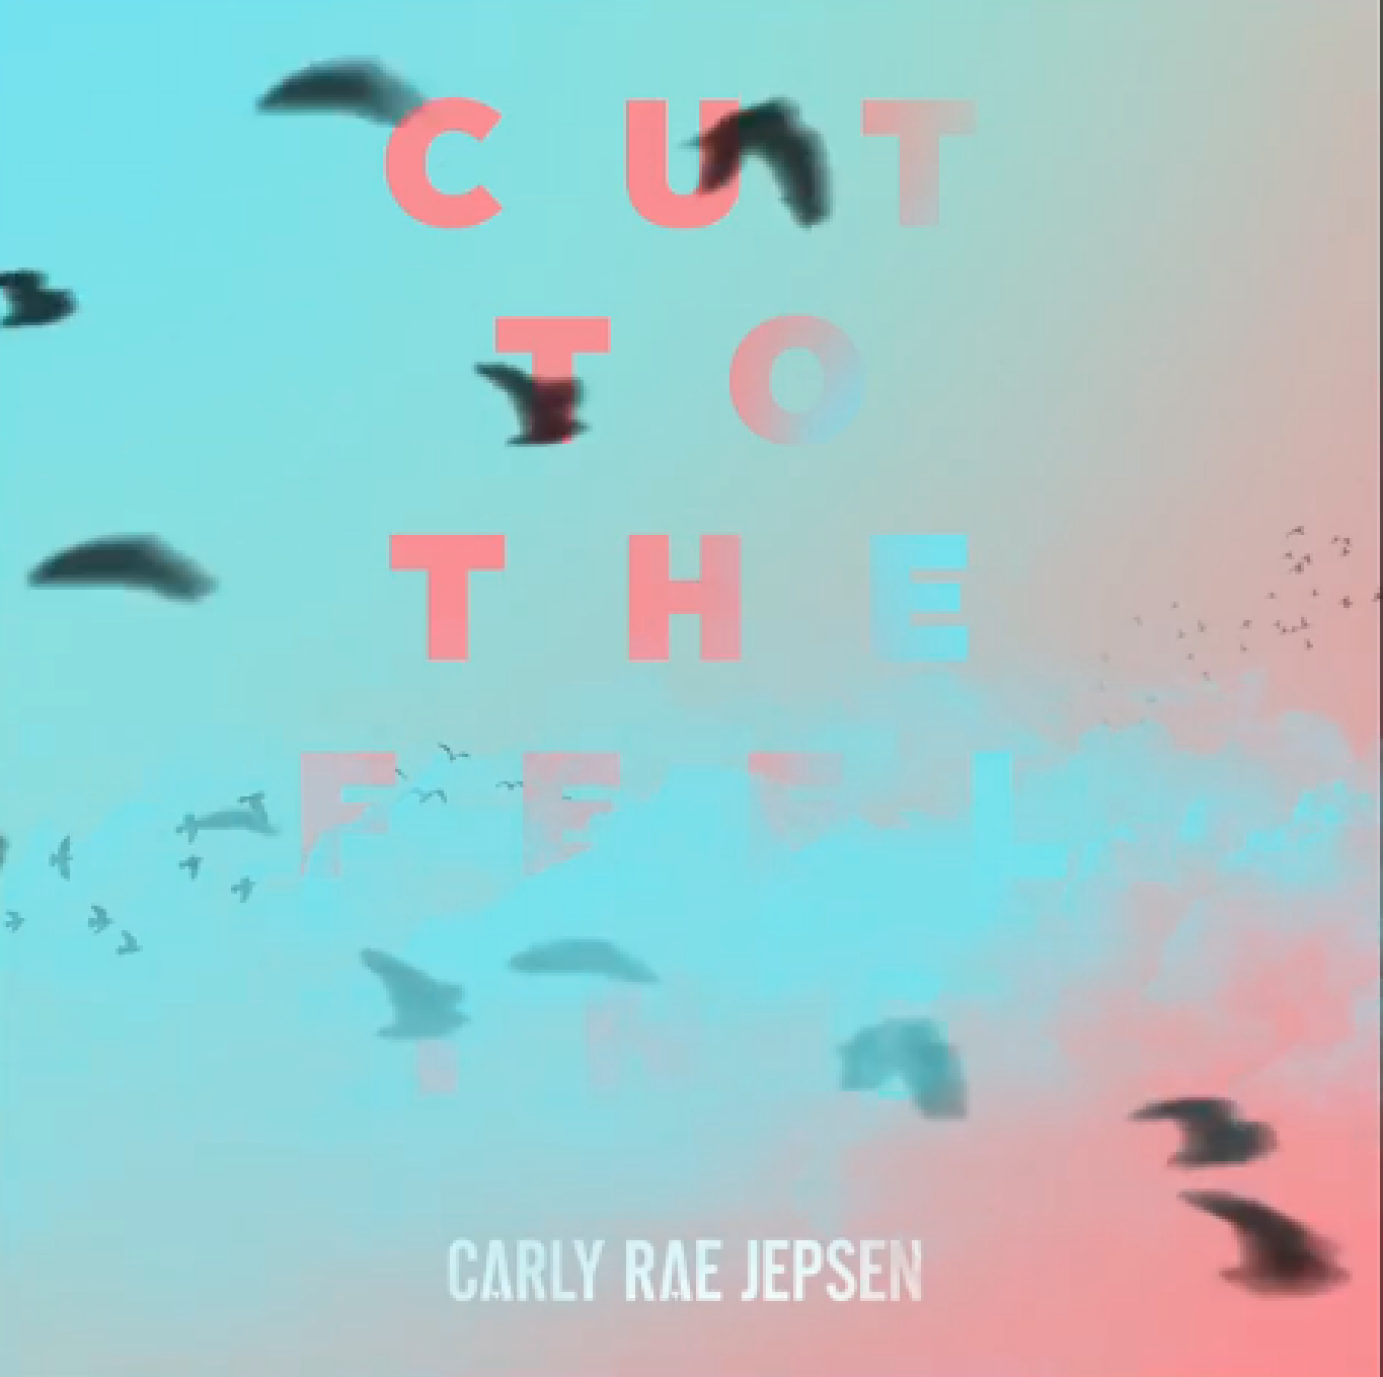 Carly Rae Jepsen - Cut To The Feeling - social media teaser